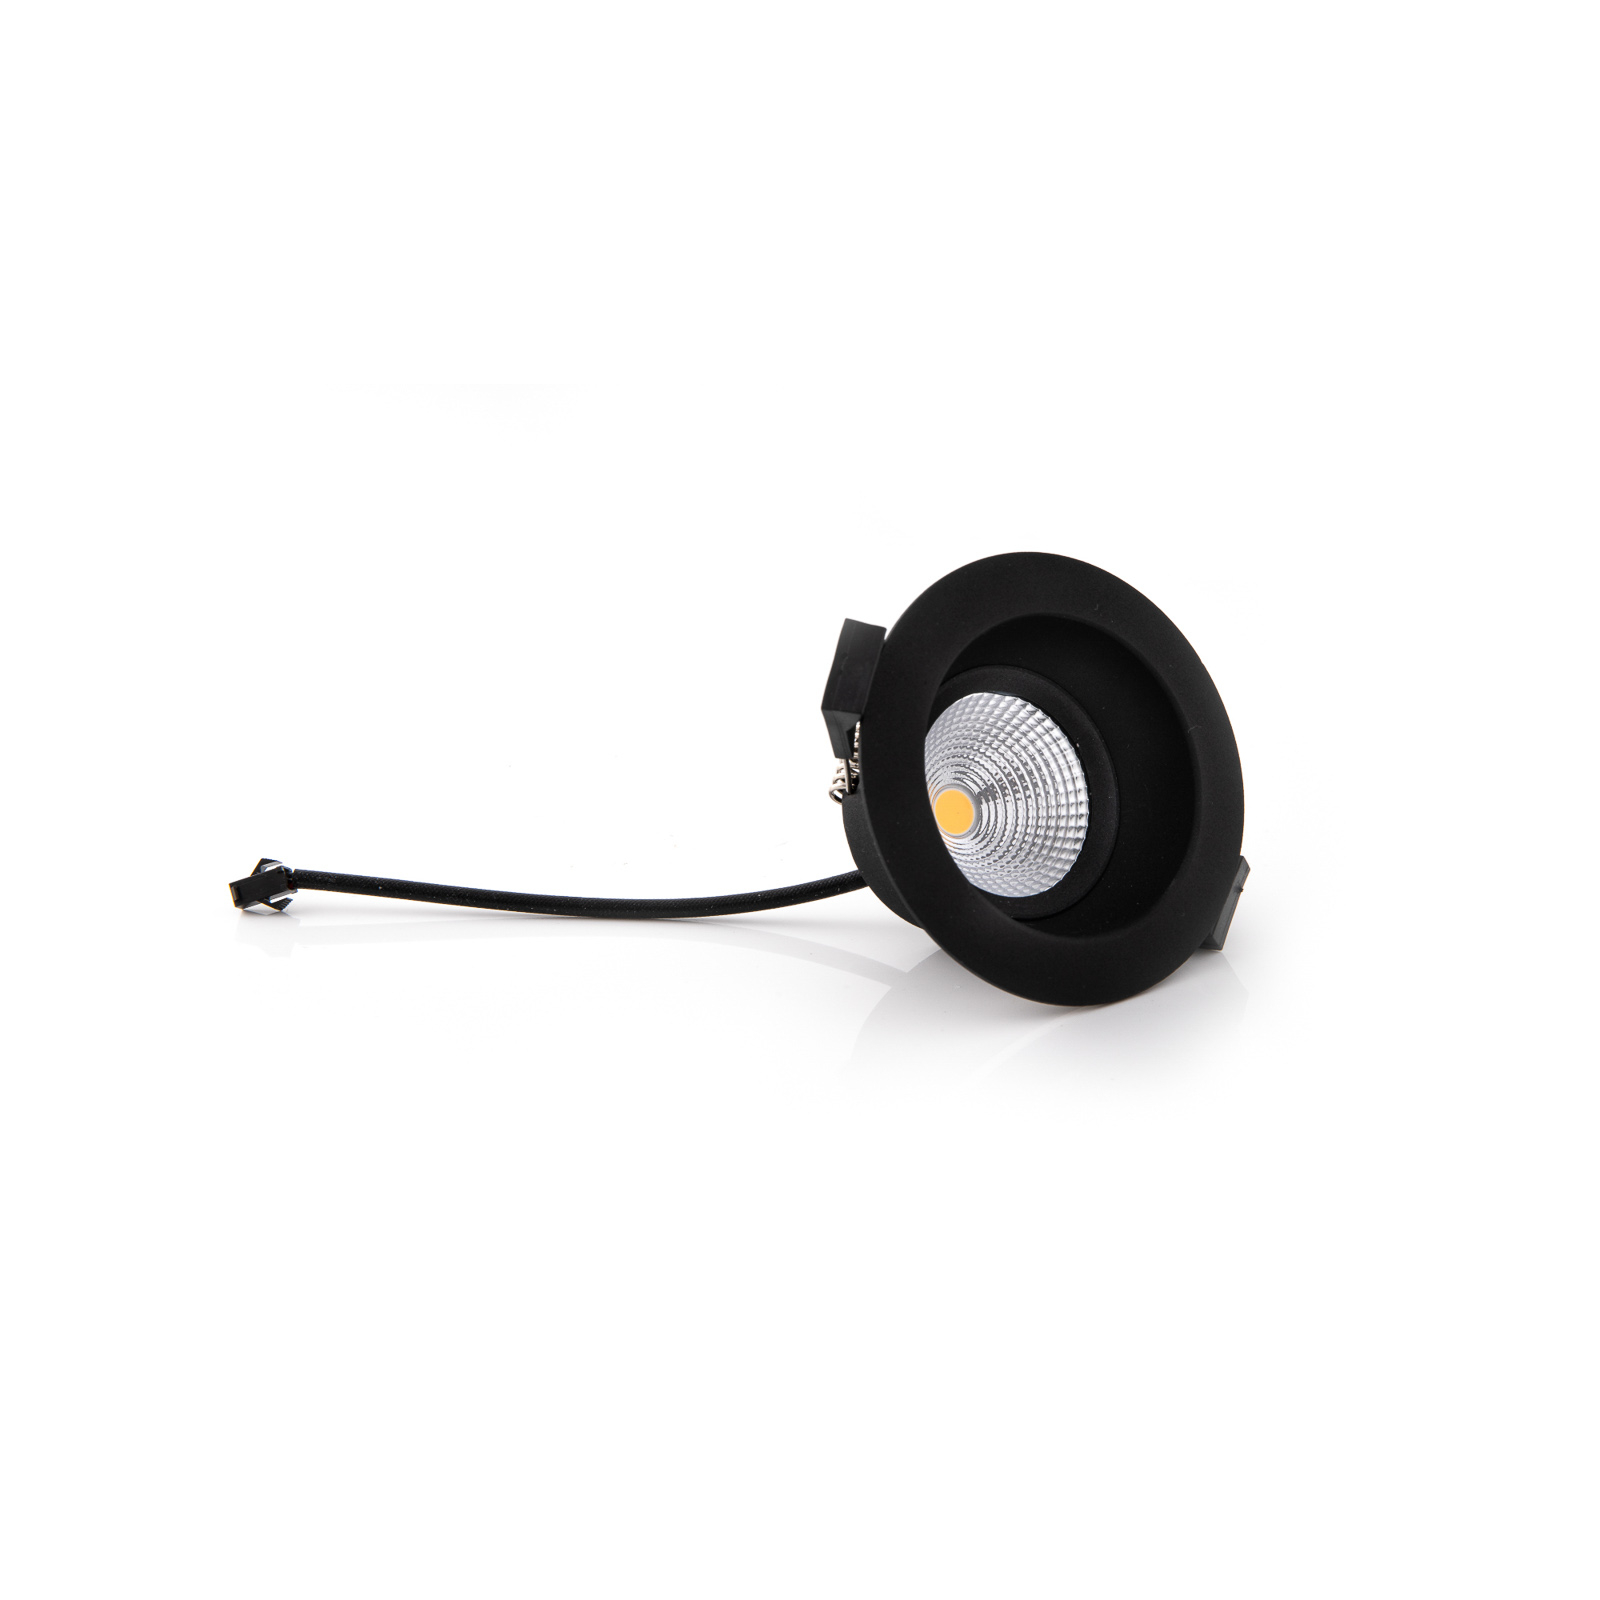 SLC One Soft LED süllyesztett reflektor, fekete színű, tompított-melegre